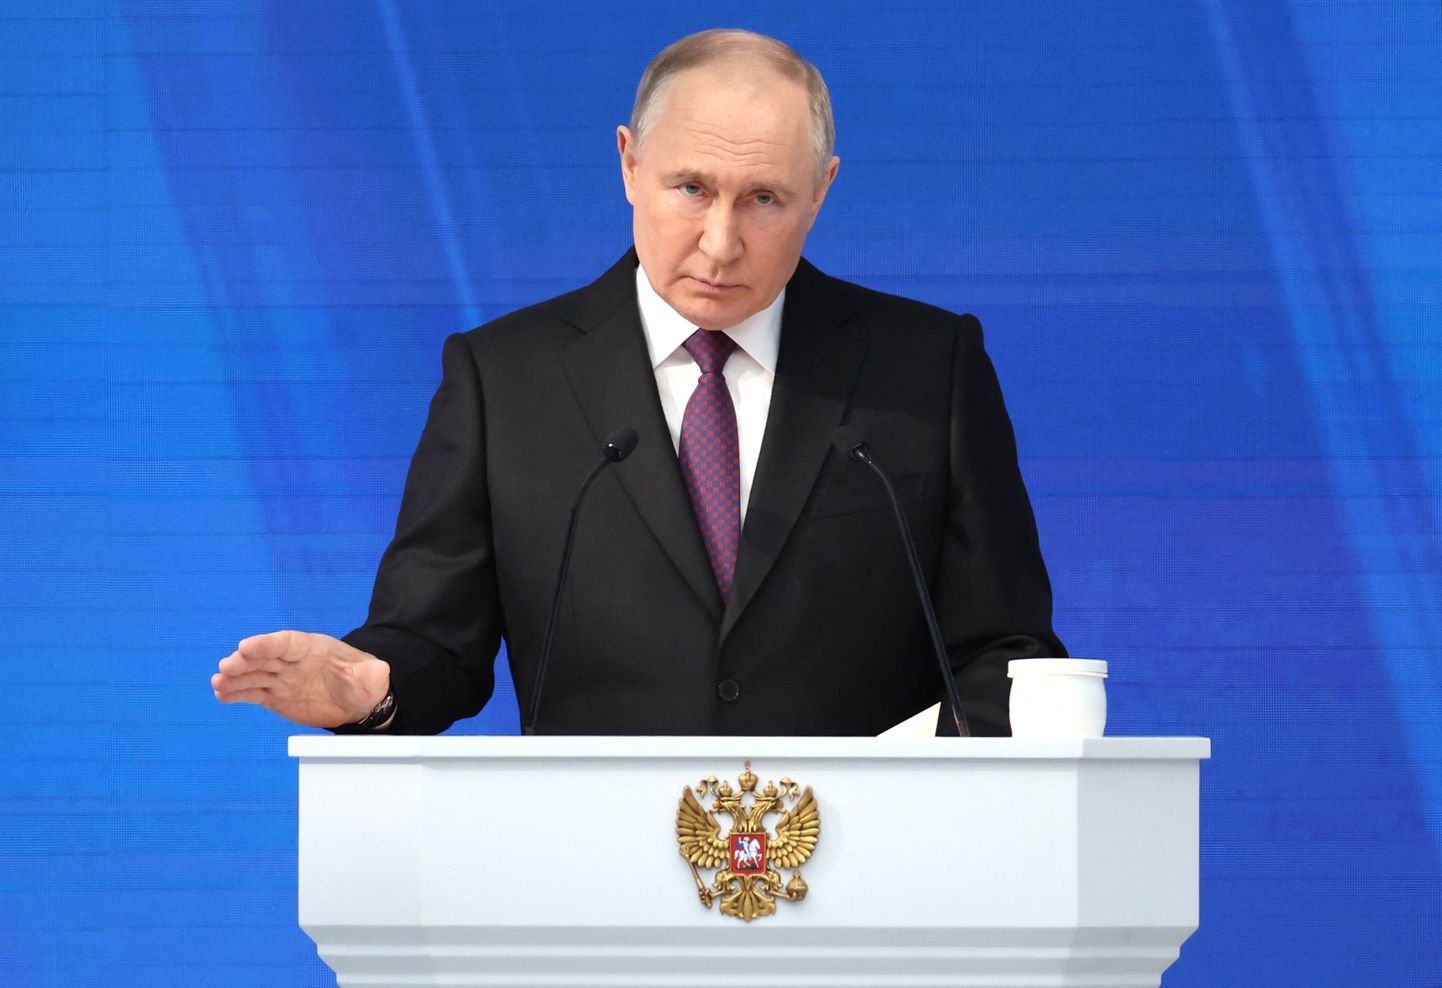 Президент России Владимир Путин не отказался от своих максимальных амбиций, которые включают свержение украинского режима и смену власти по указке Кремля, предупреждают западные чиновники.